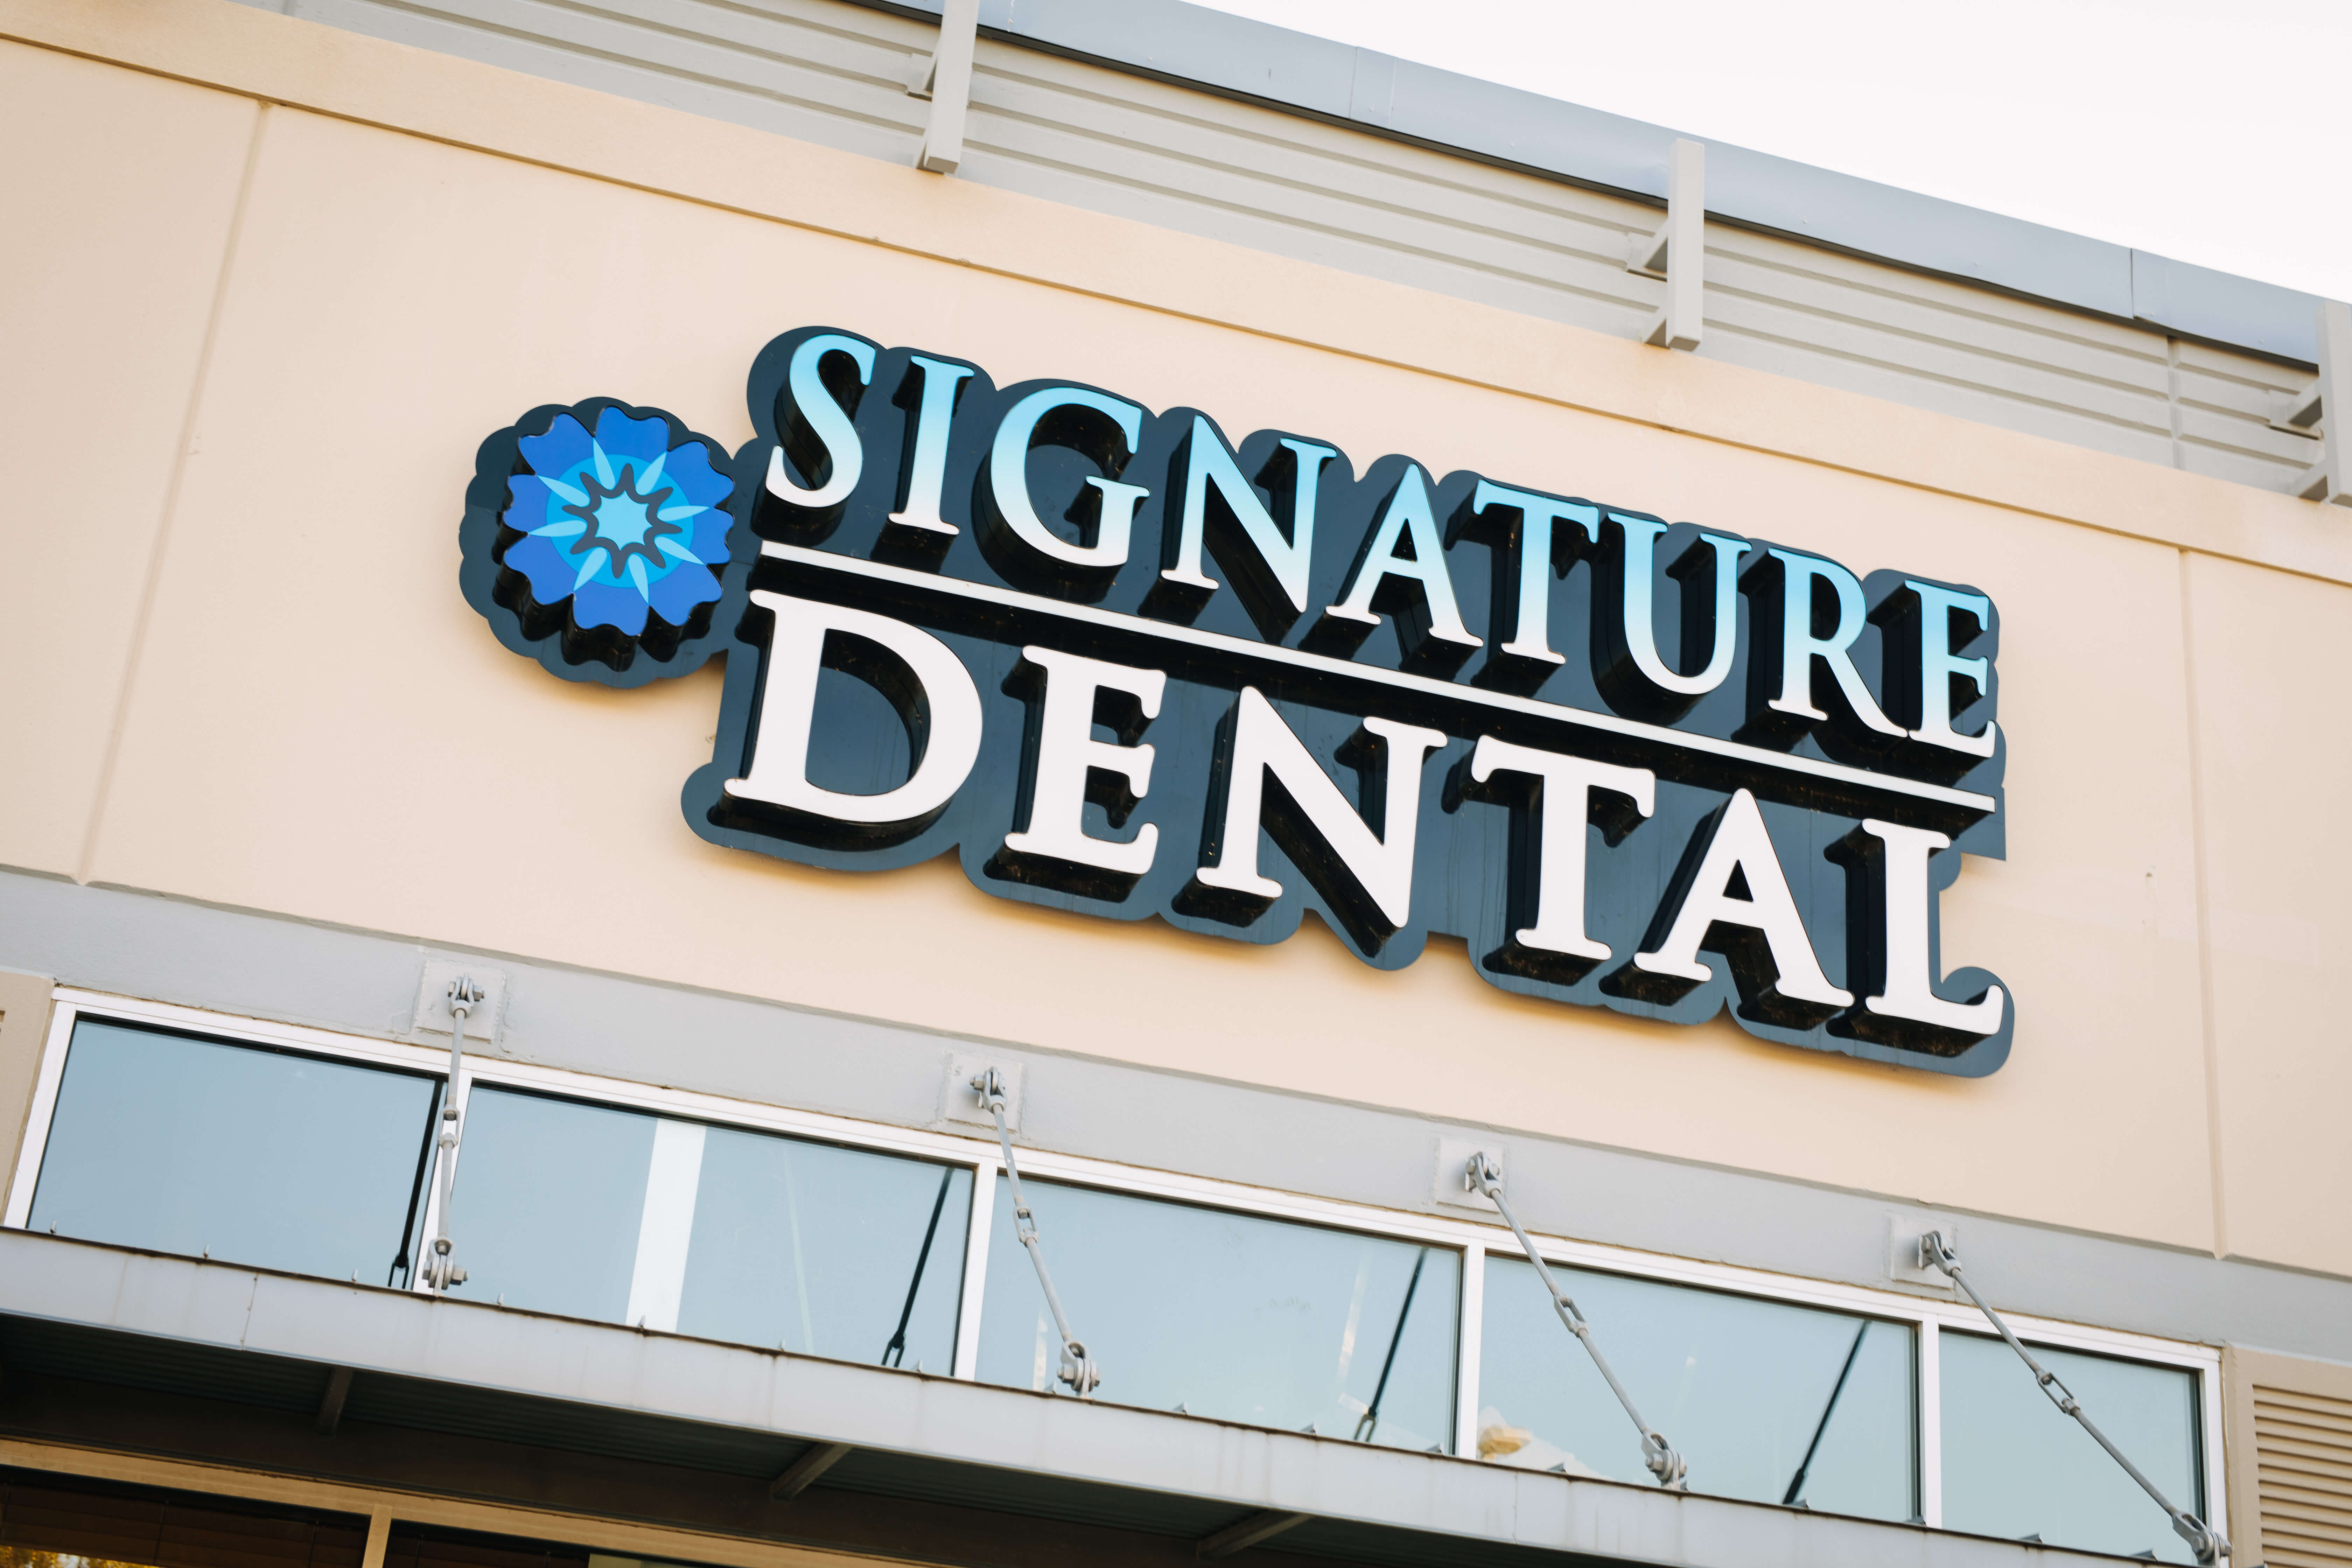 Signature Dental